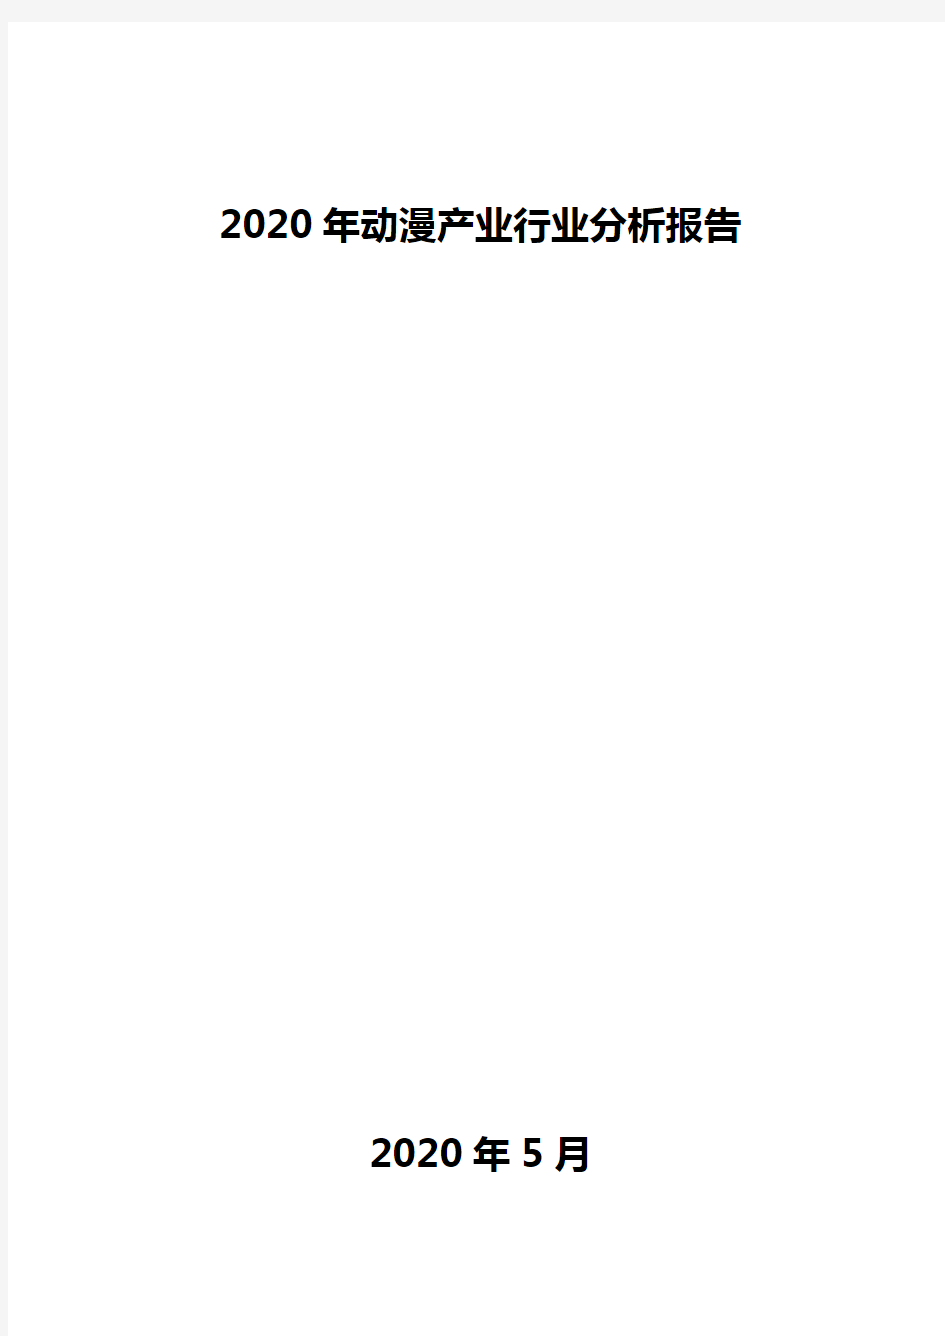 2020年动漫产业行业分析报告